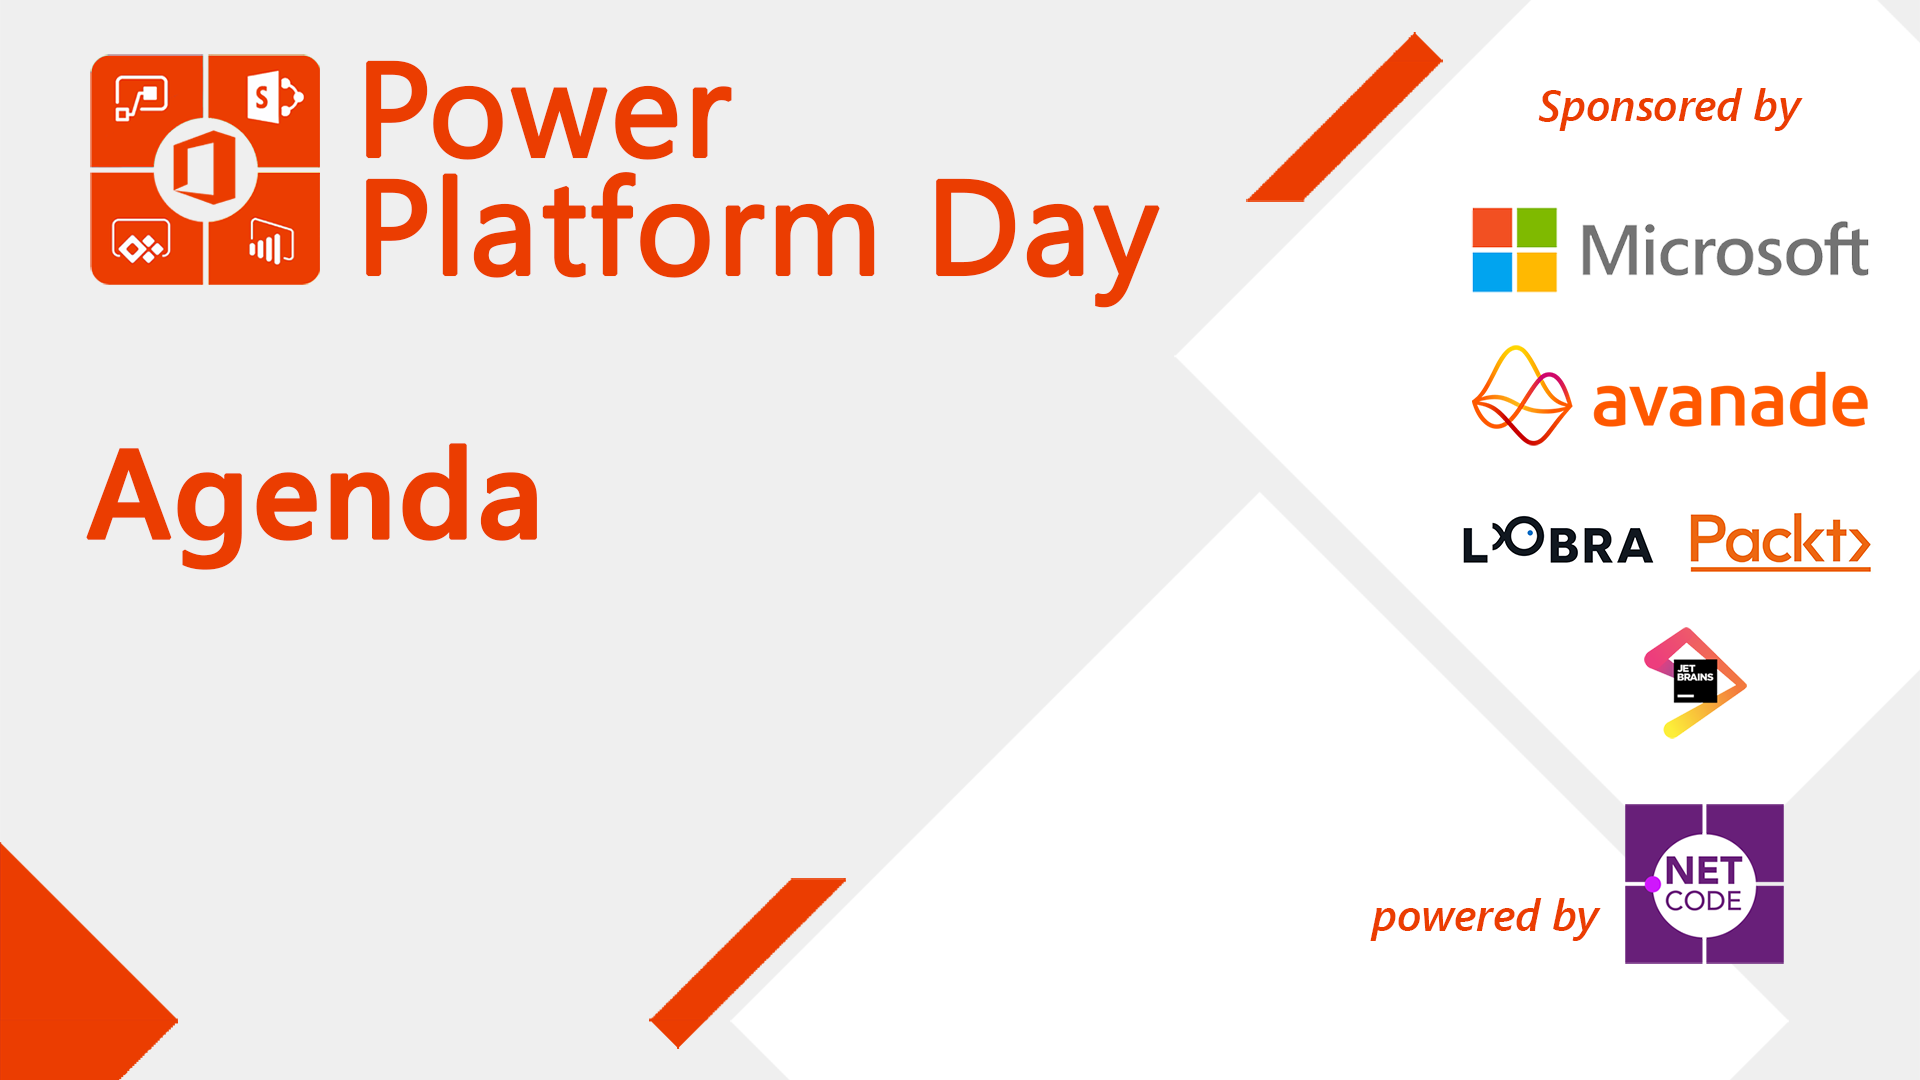 Lobra Futura è uno sponsor di Power Platform Day il 19.11.21